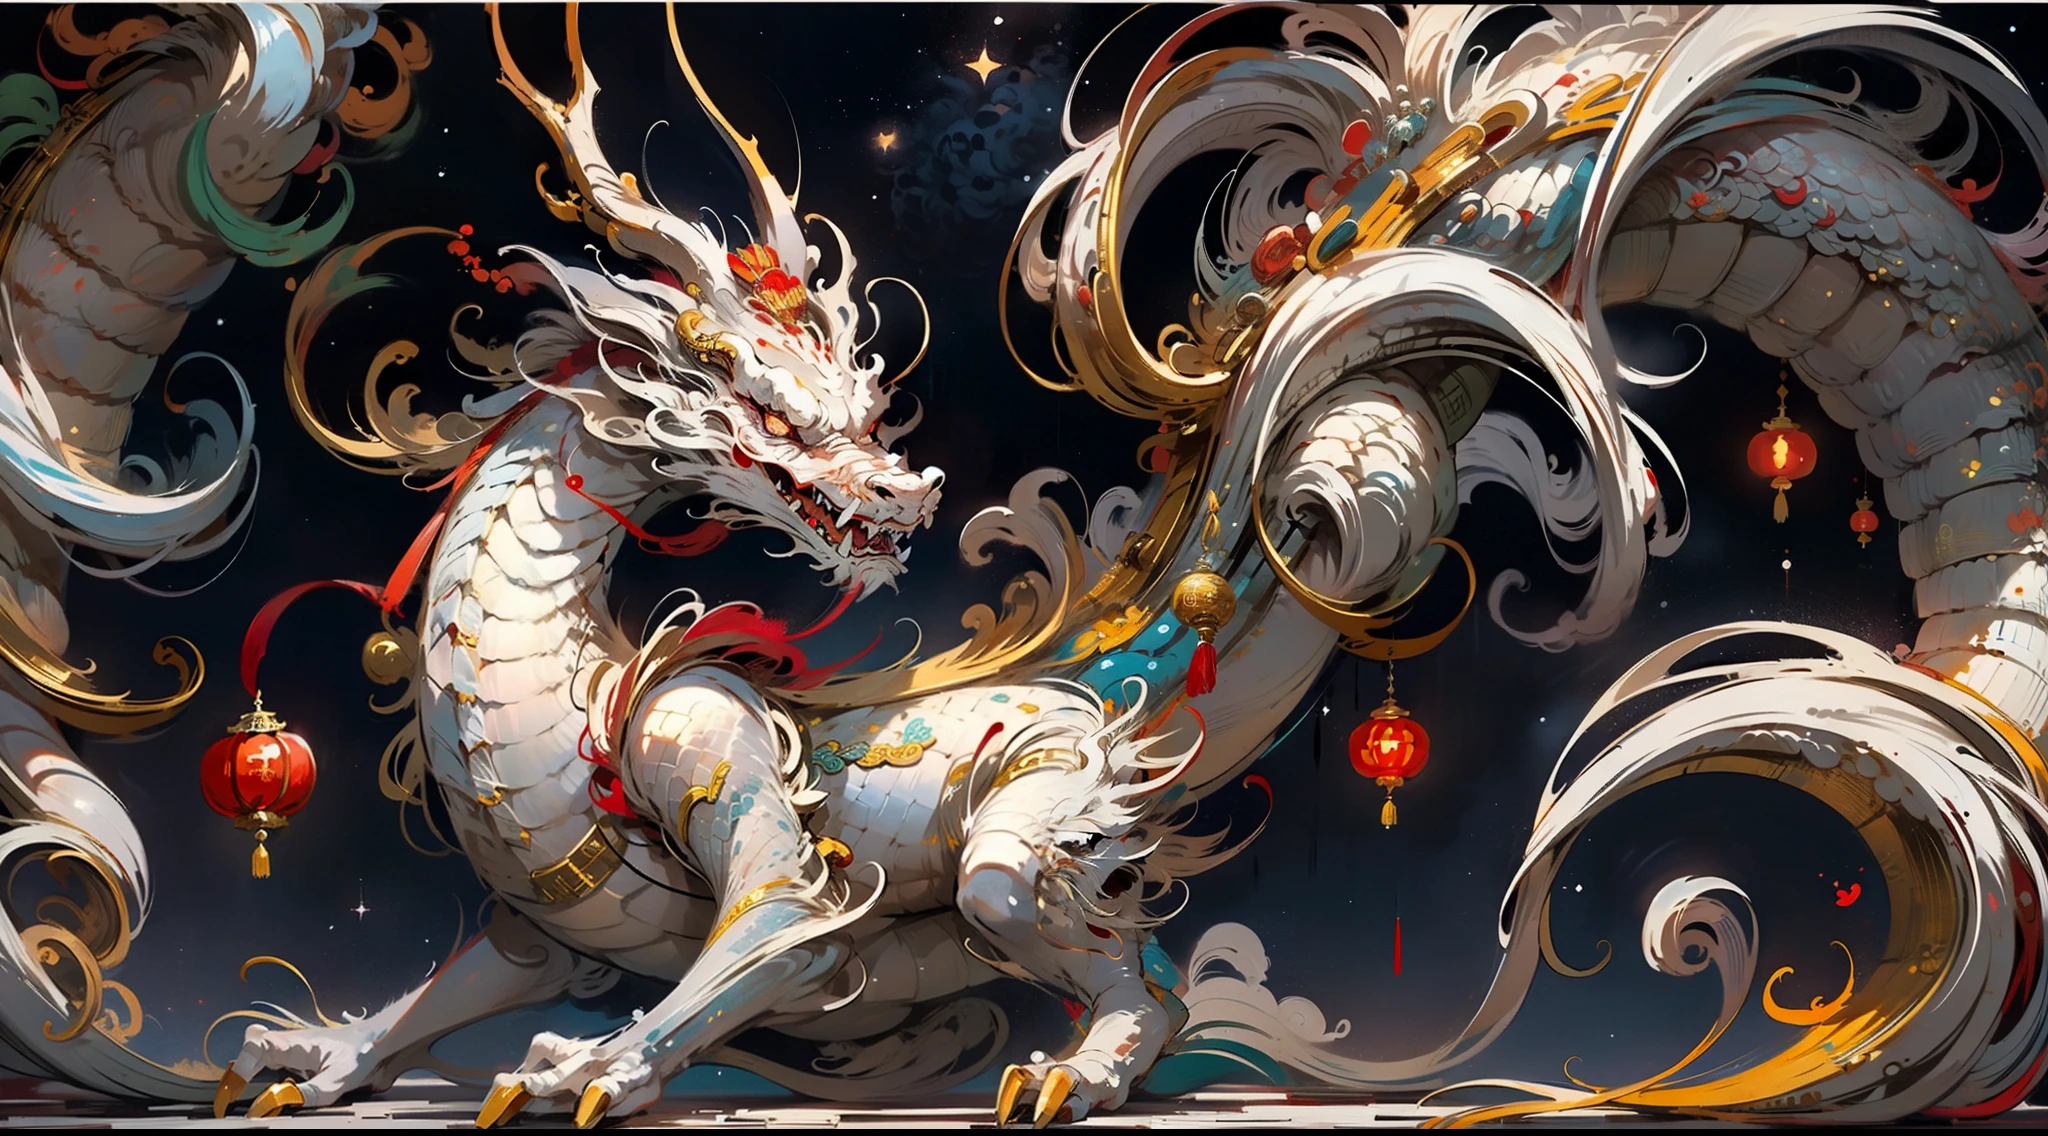 中国の伝統的な龍, 瑞々しいるい, 知恵, 赤と白のカラーマッチング, 星空の背景, ダイナミックな感覚